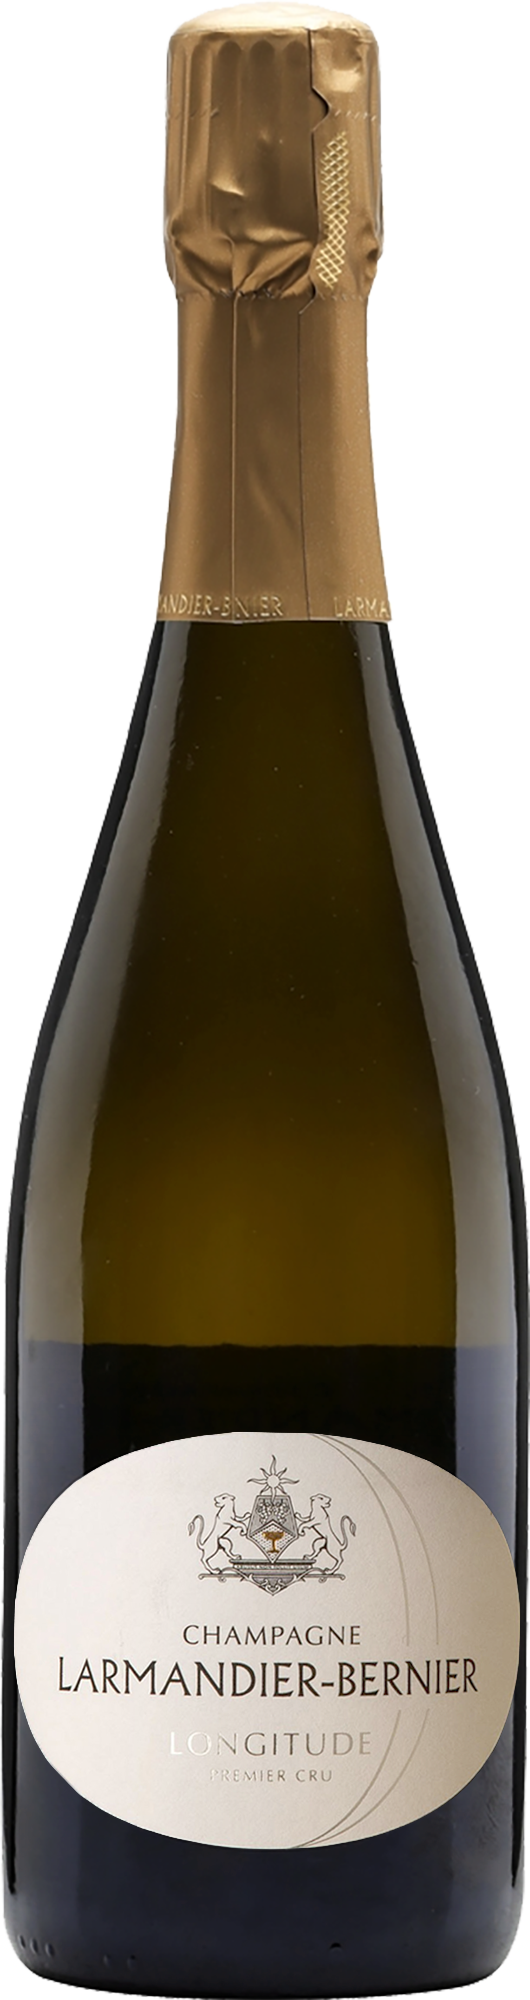 Champagne Larmandier-Bernier 1er Cru Longitude Blanc de Blancs NV (Base 18 Disg. Apr 2021)